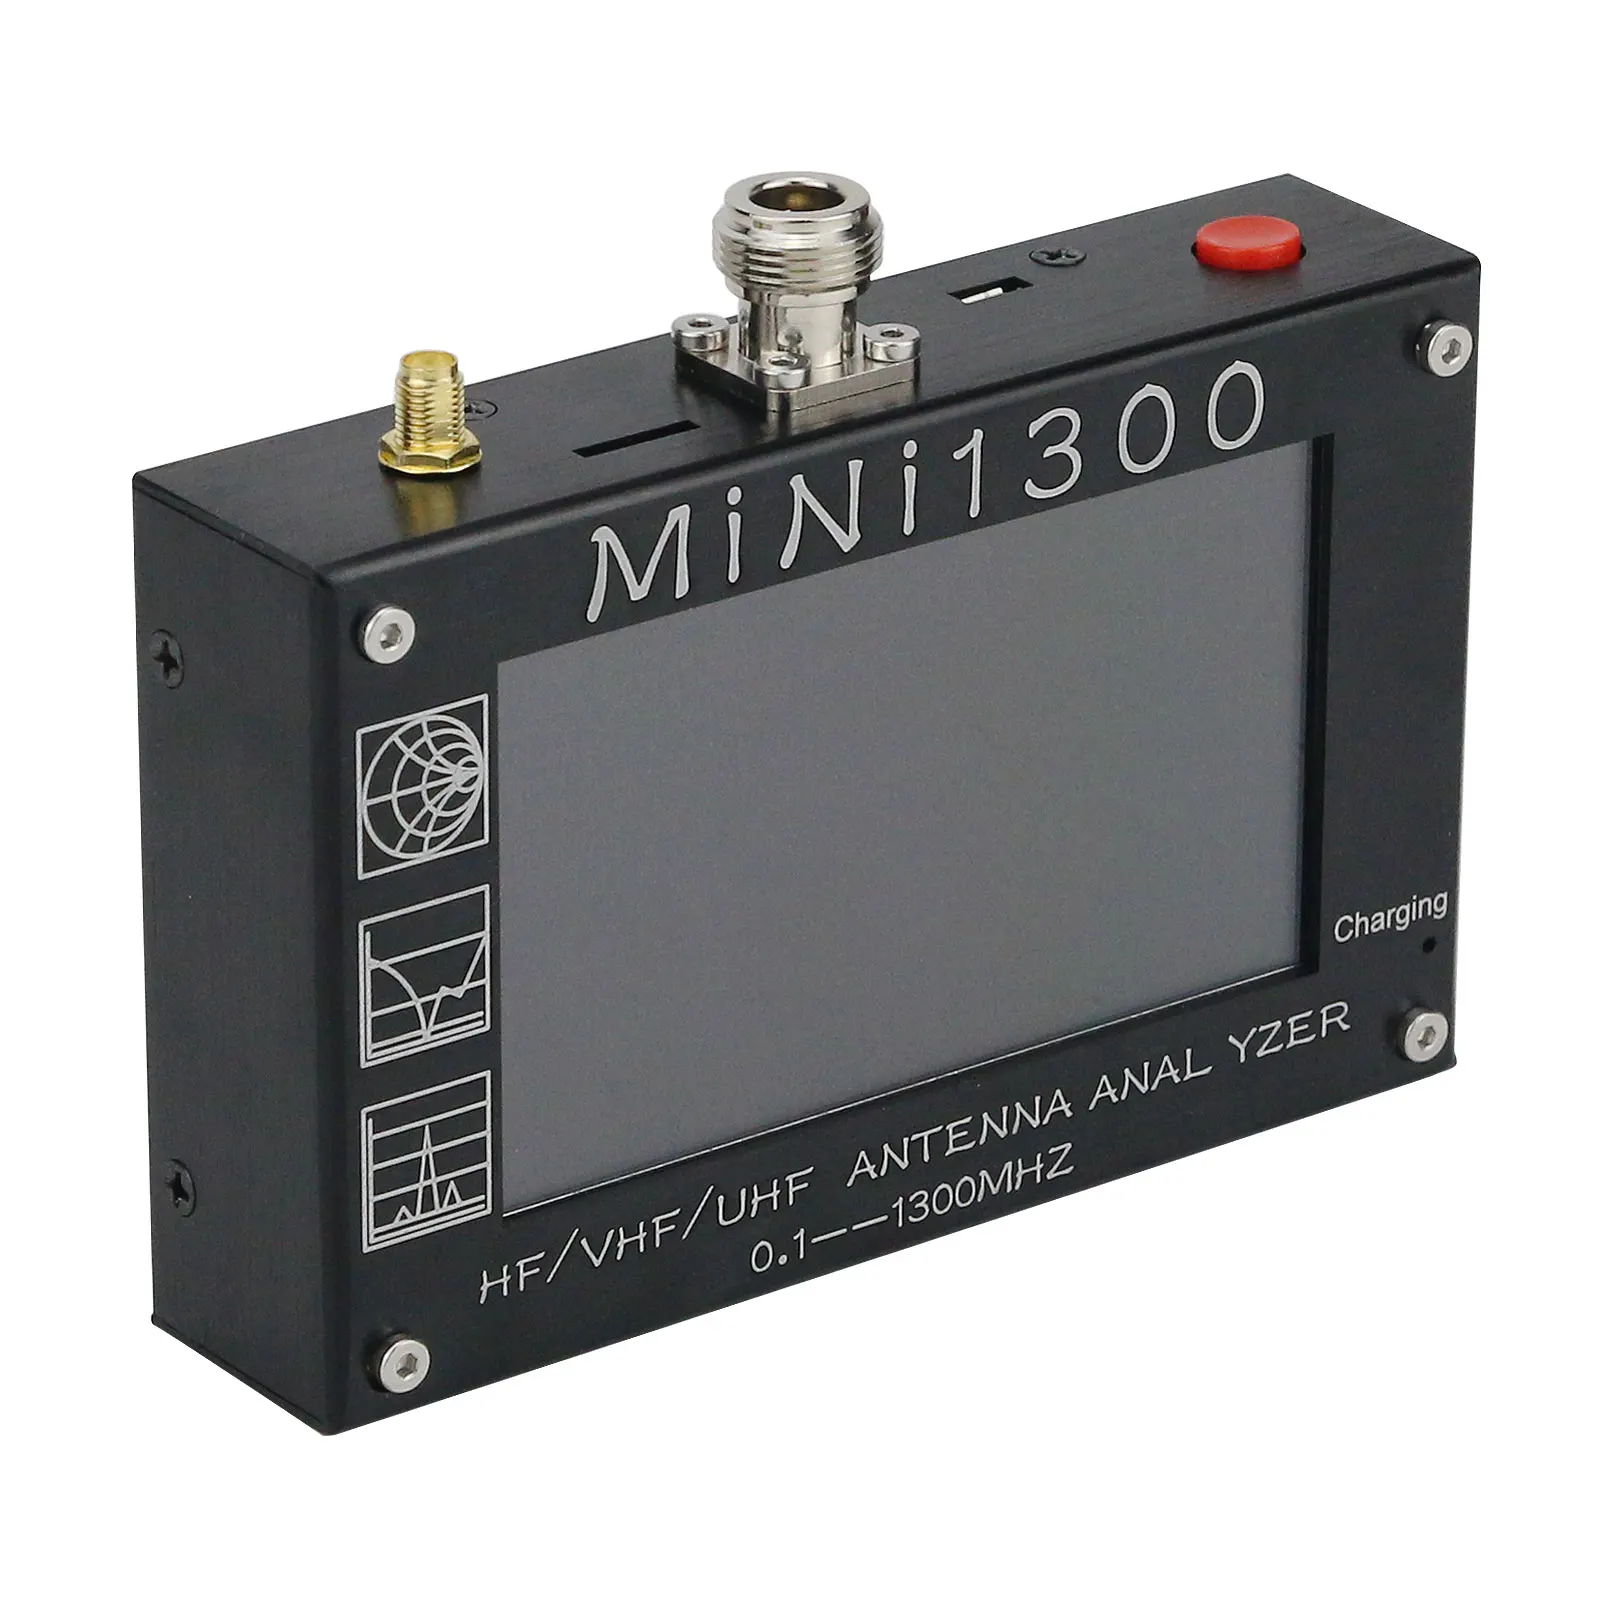 Analizzatore Antenna HamGeek Mini1300 0.1-1300MHz HF/VHF/UHF con guscio in lega di alluminio Touch Screen da 4.3